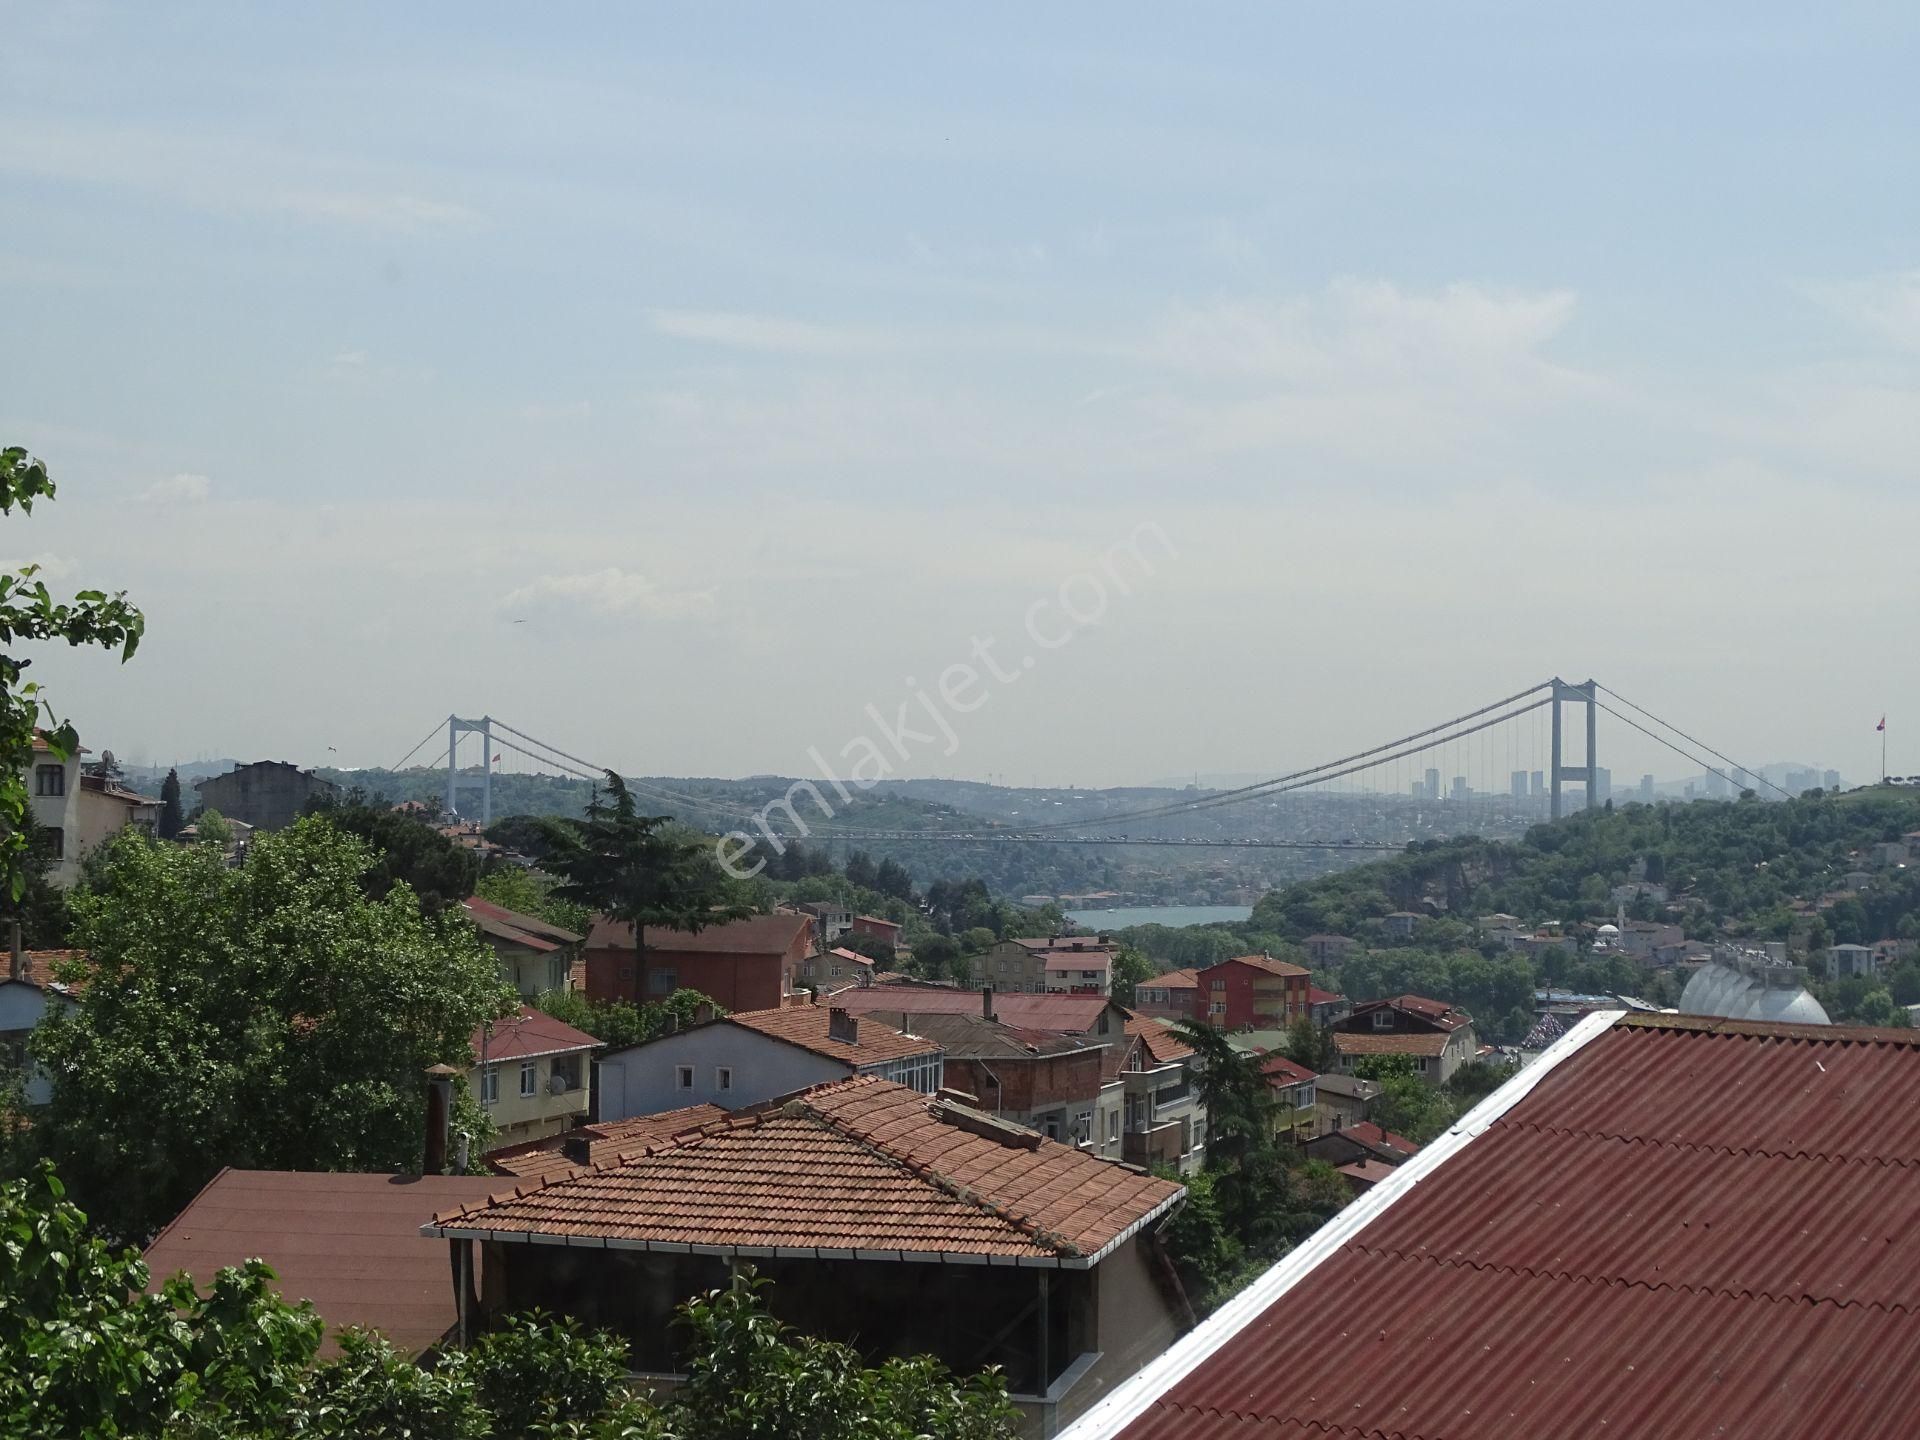 Sarıyer Reşitpaşa Boğaz Manzaralı Kiralık Daire İstinye Parka Enka'ya Borsa İstanbul'a yakın manzaralı 2+1 daire